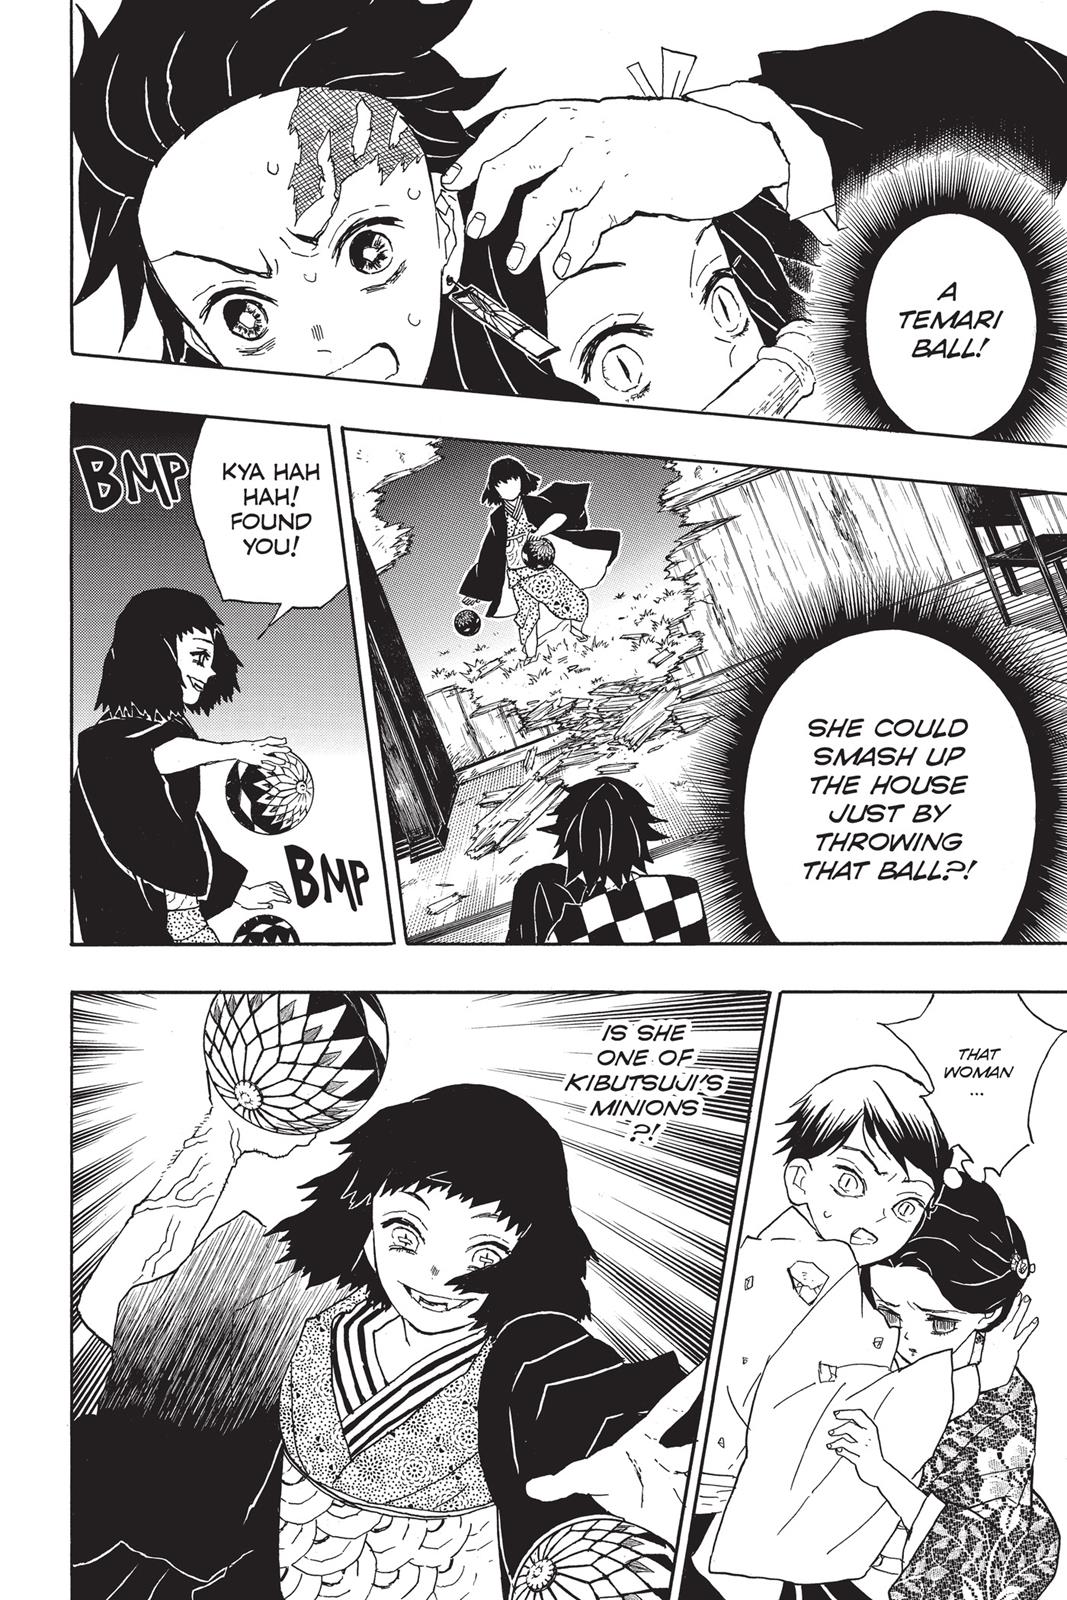 Demon Slayer Manga Manga Chapter - 16 - image 4